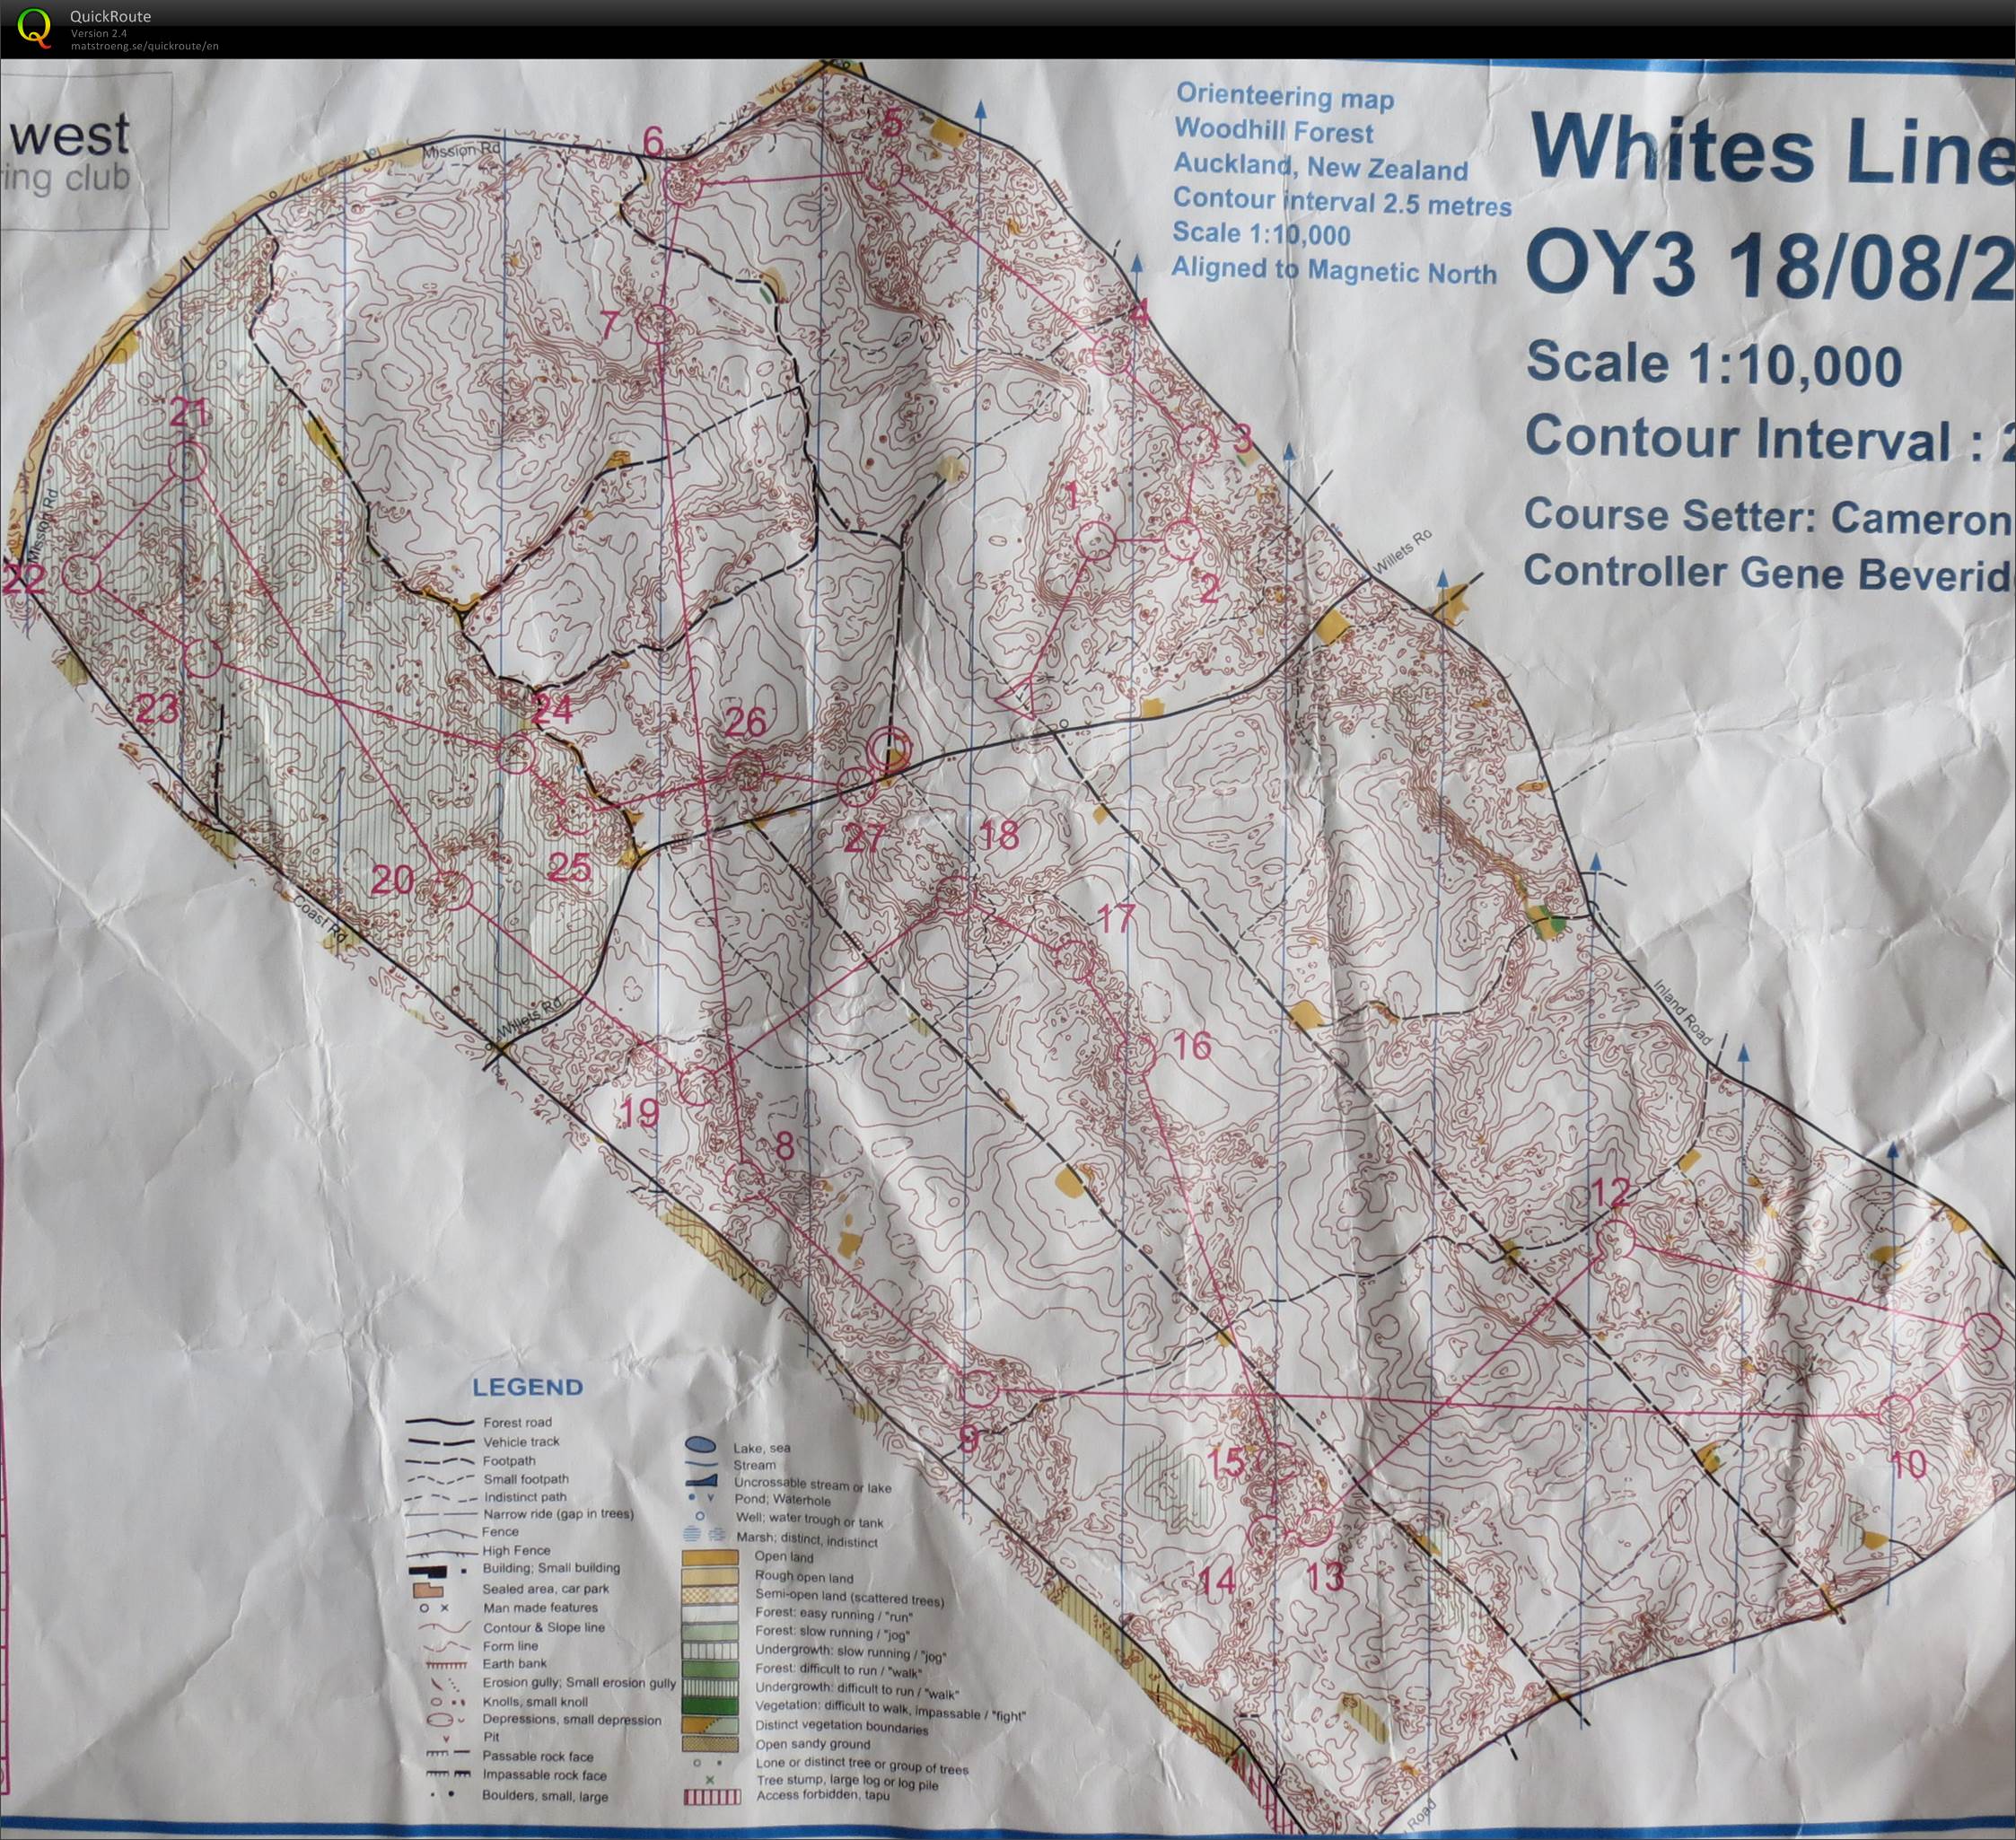 OY3 2013 Whites Line (17.08.2013)